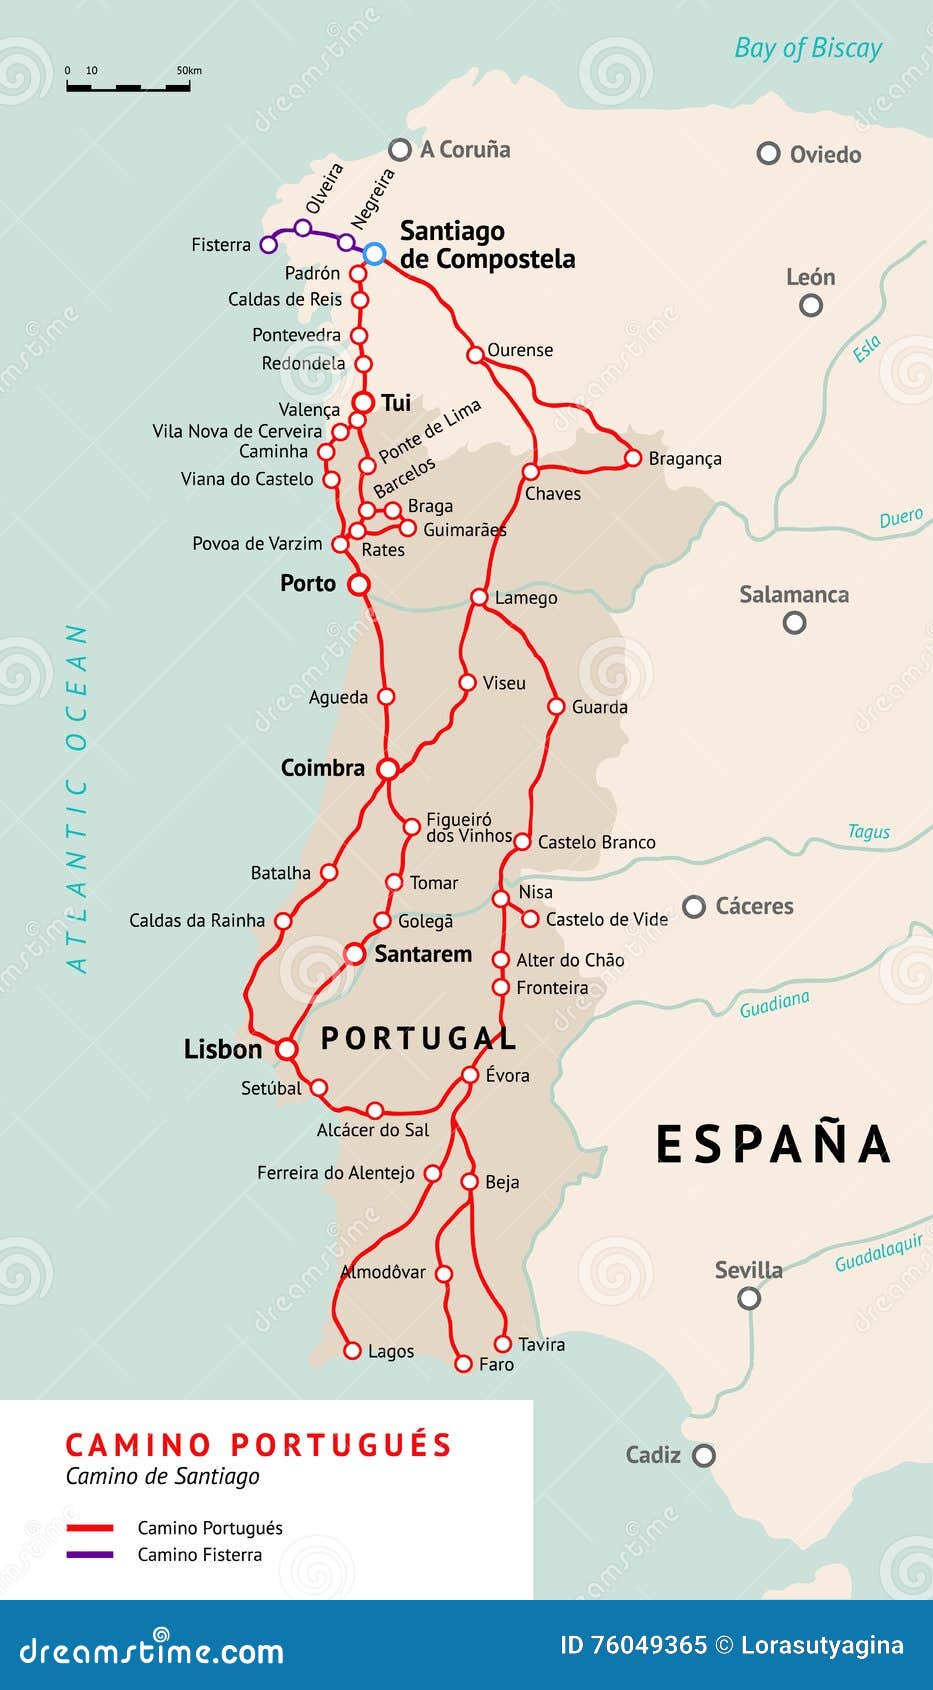 camino portuguÃÂ©s map. camino de santiago portugal